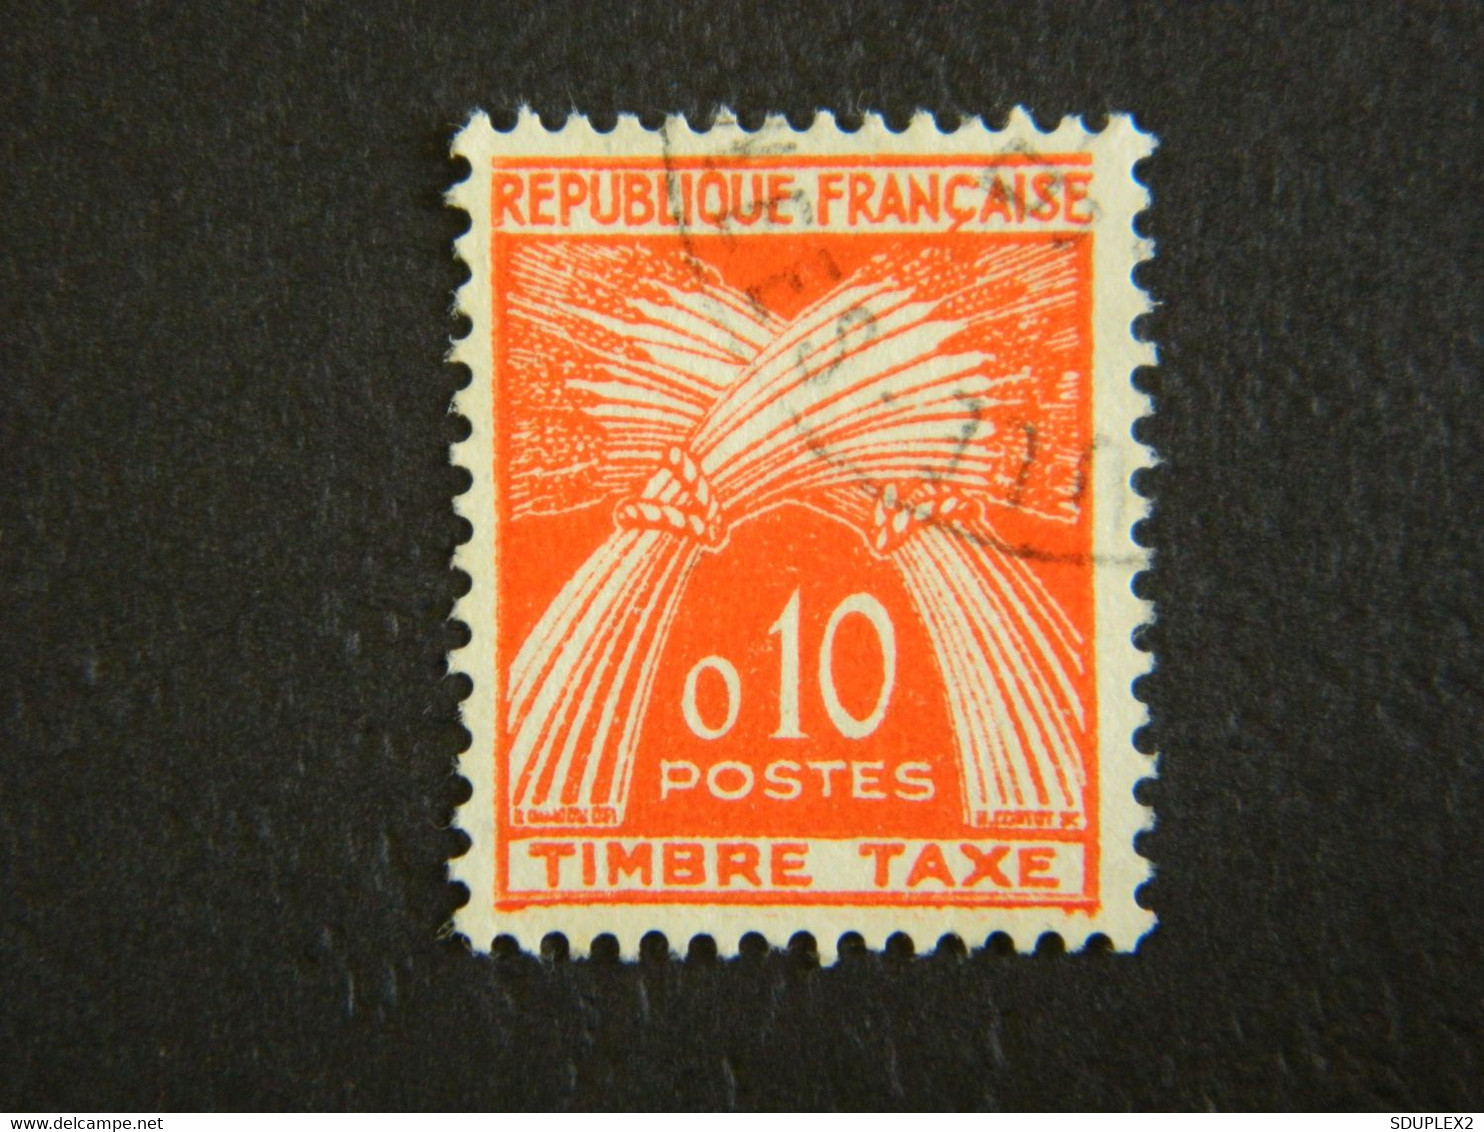 République Française Timbre Taxe 0,10  Oblitéré 1960 - 1960-.... Used